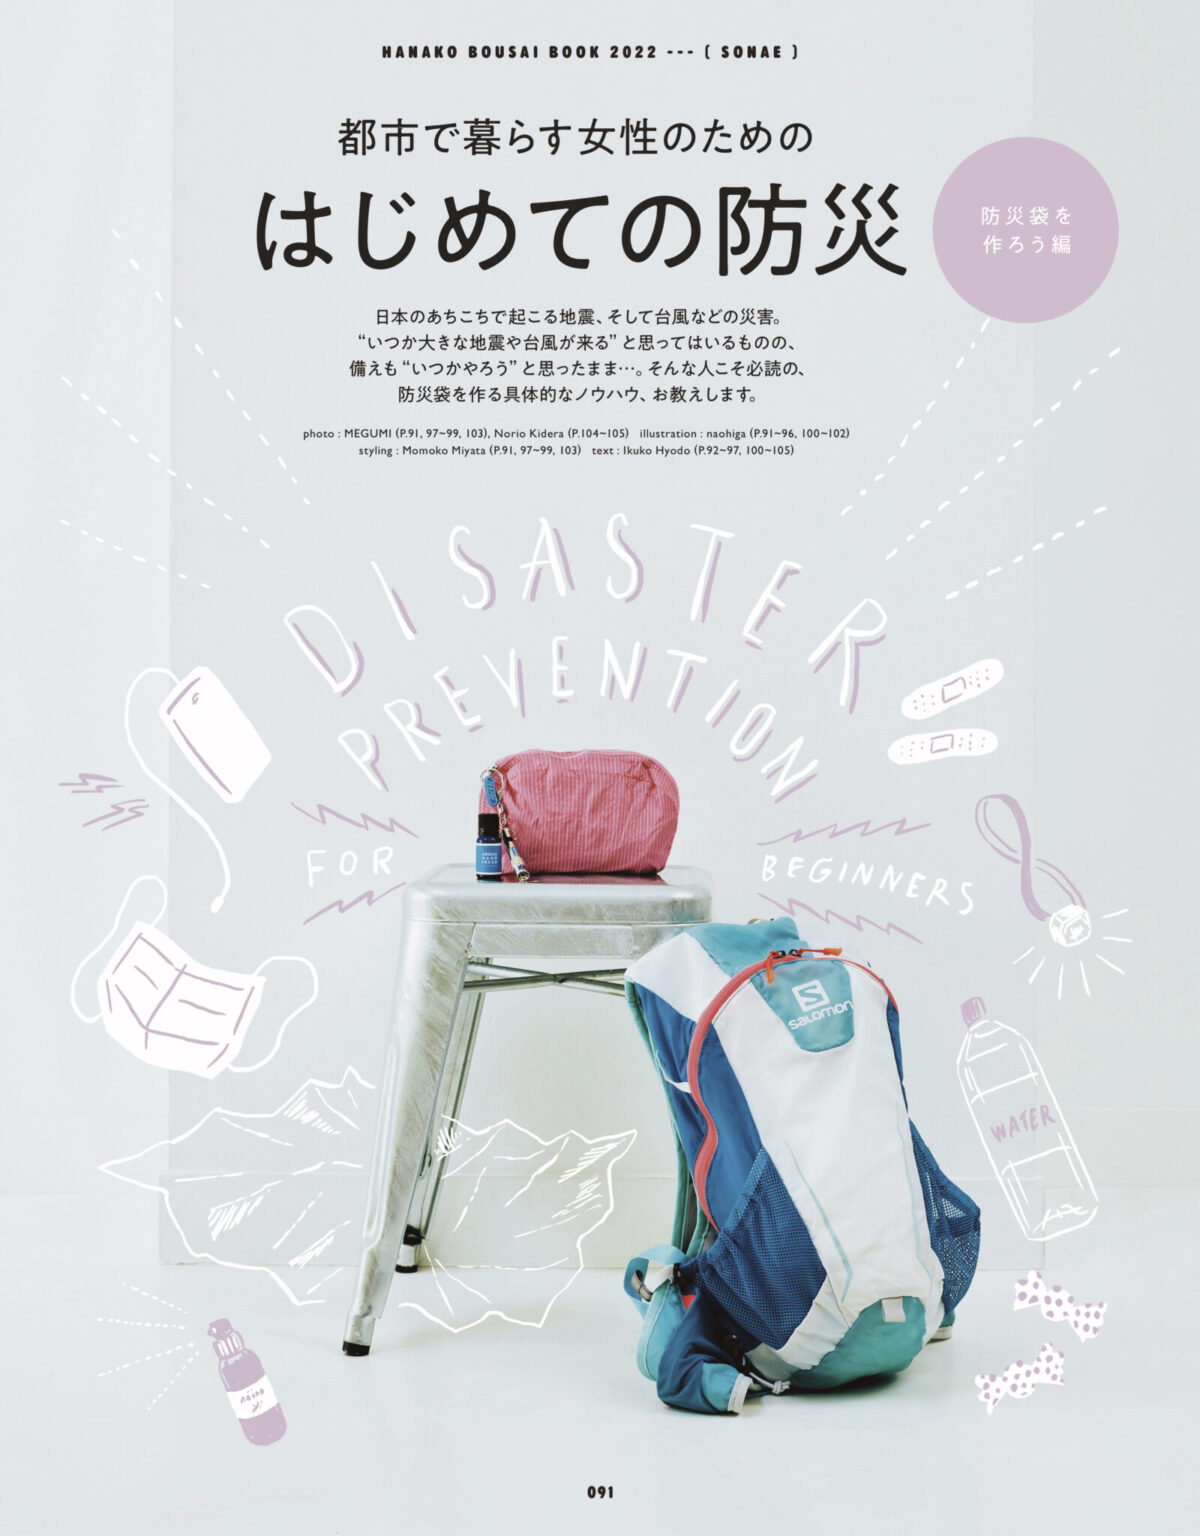 こちらも恒例のHanako防災特集。今回は防災袋を作ろう編。本誌を見ながら、暮らしに合わせたあなただけの防災袋を作ってみては？